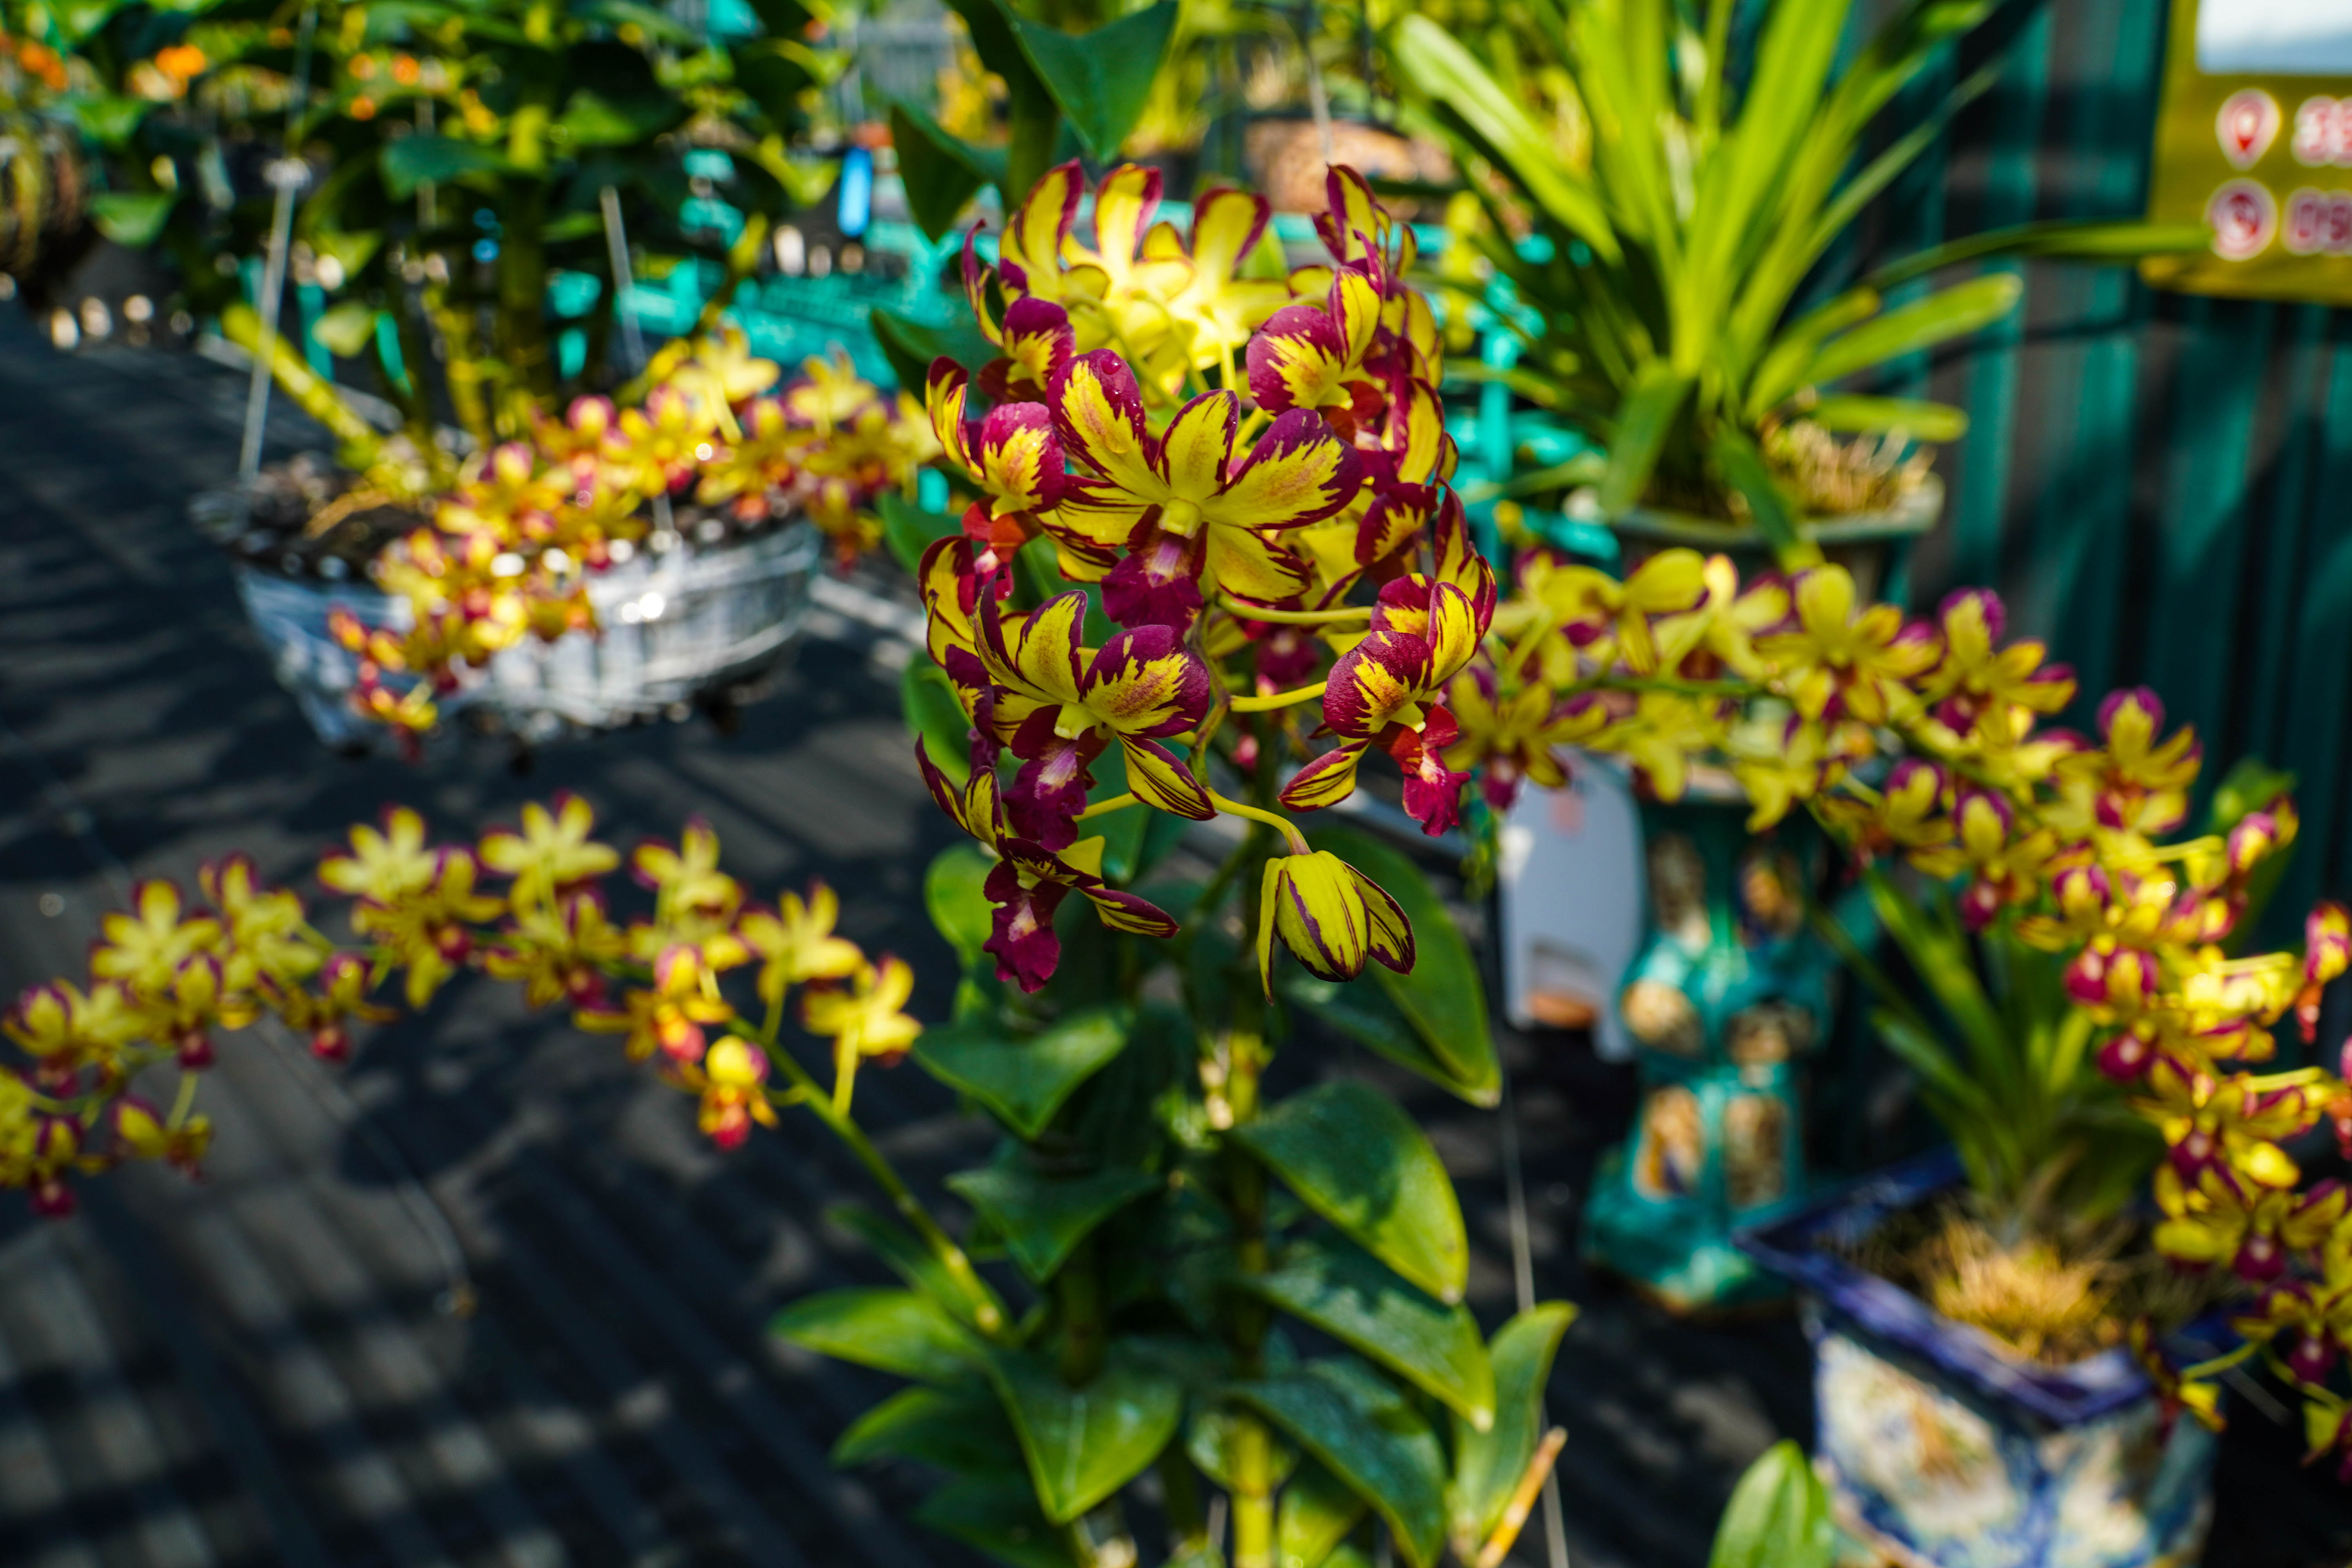 Dòng hoa lan Dendro được rất nhiều người yêu thích bởi sự đa dạng về màu sắc, cách chăm sóc đơn giản, giá cả phải chăng. Ảnh: Kim Anh.